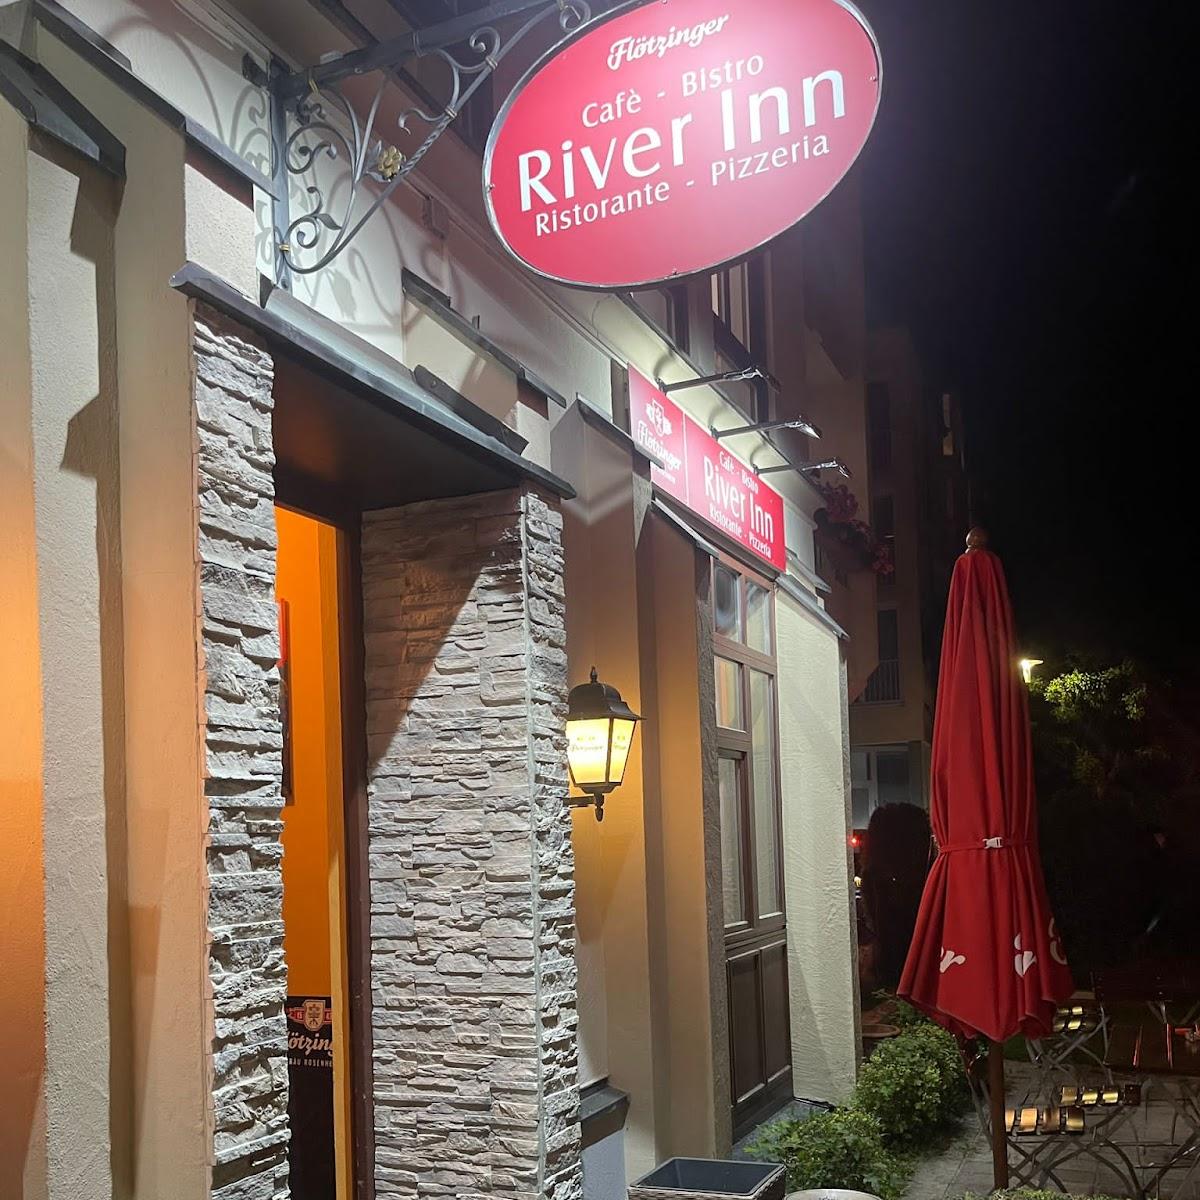 Restaurant "River Inn Wasserburg" in Wasserburg am Inn